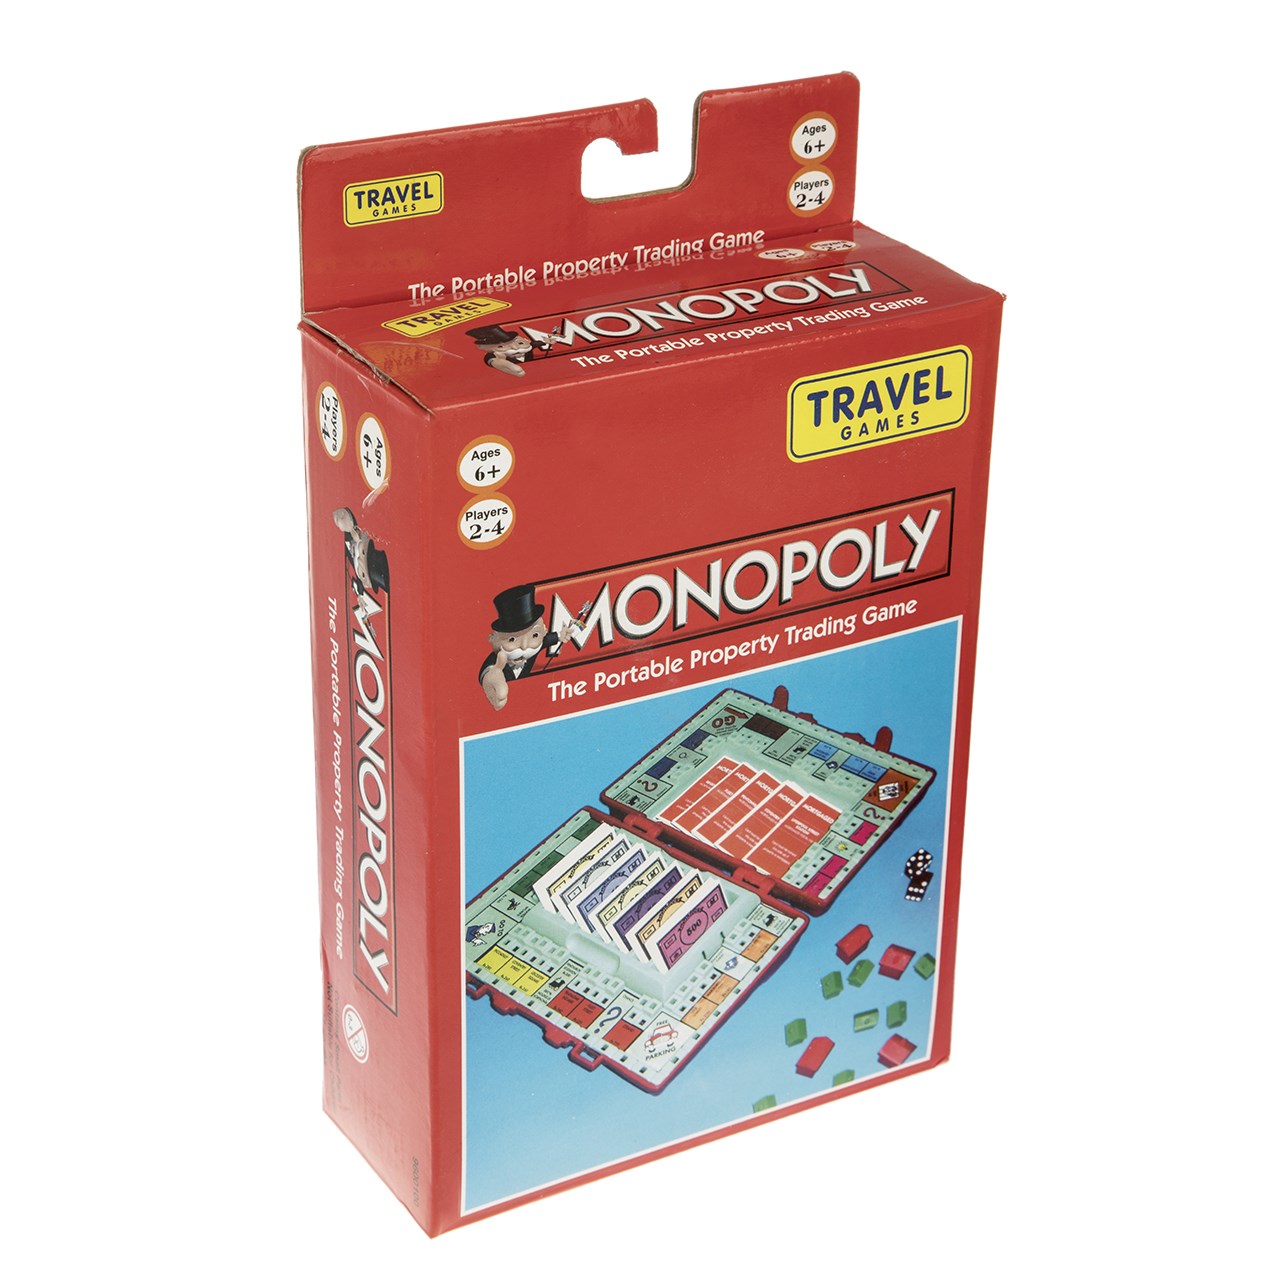 بازی فکری هاسبرو  مونوپولی مدل Travel Games کد 9600100